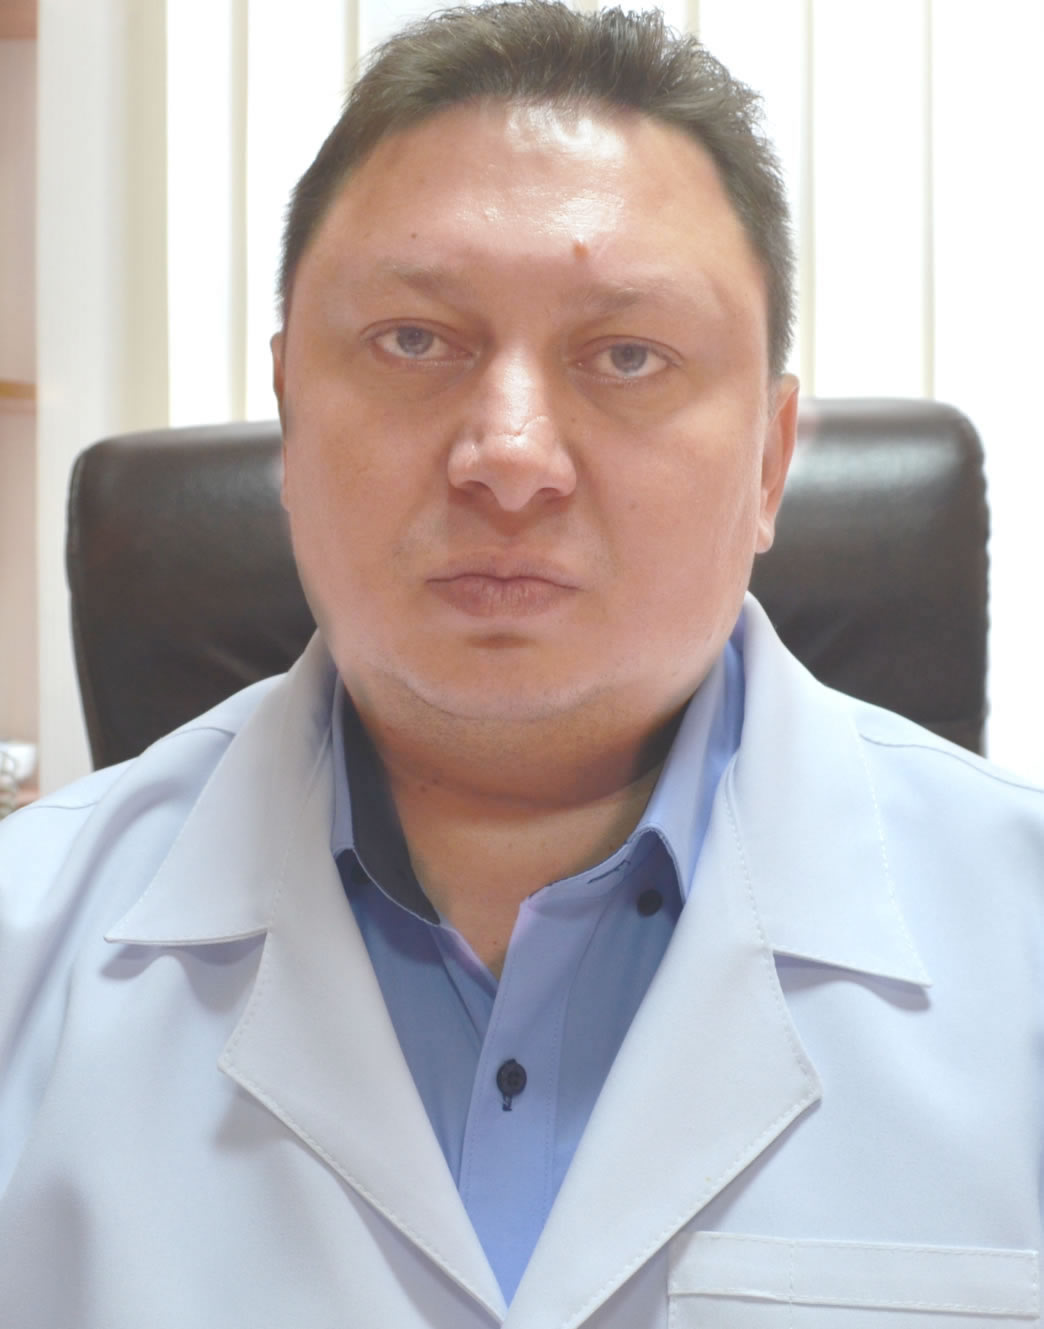 Петрик С.В. - лікар вищою категорії  ортопед - травматолог, Полтава 